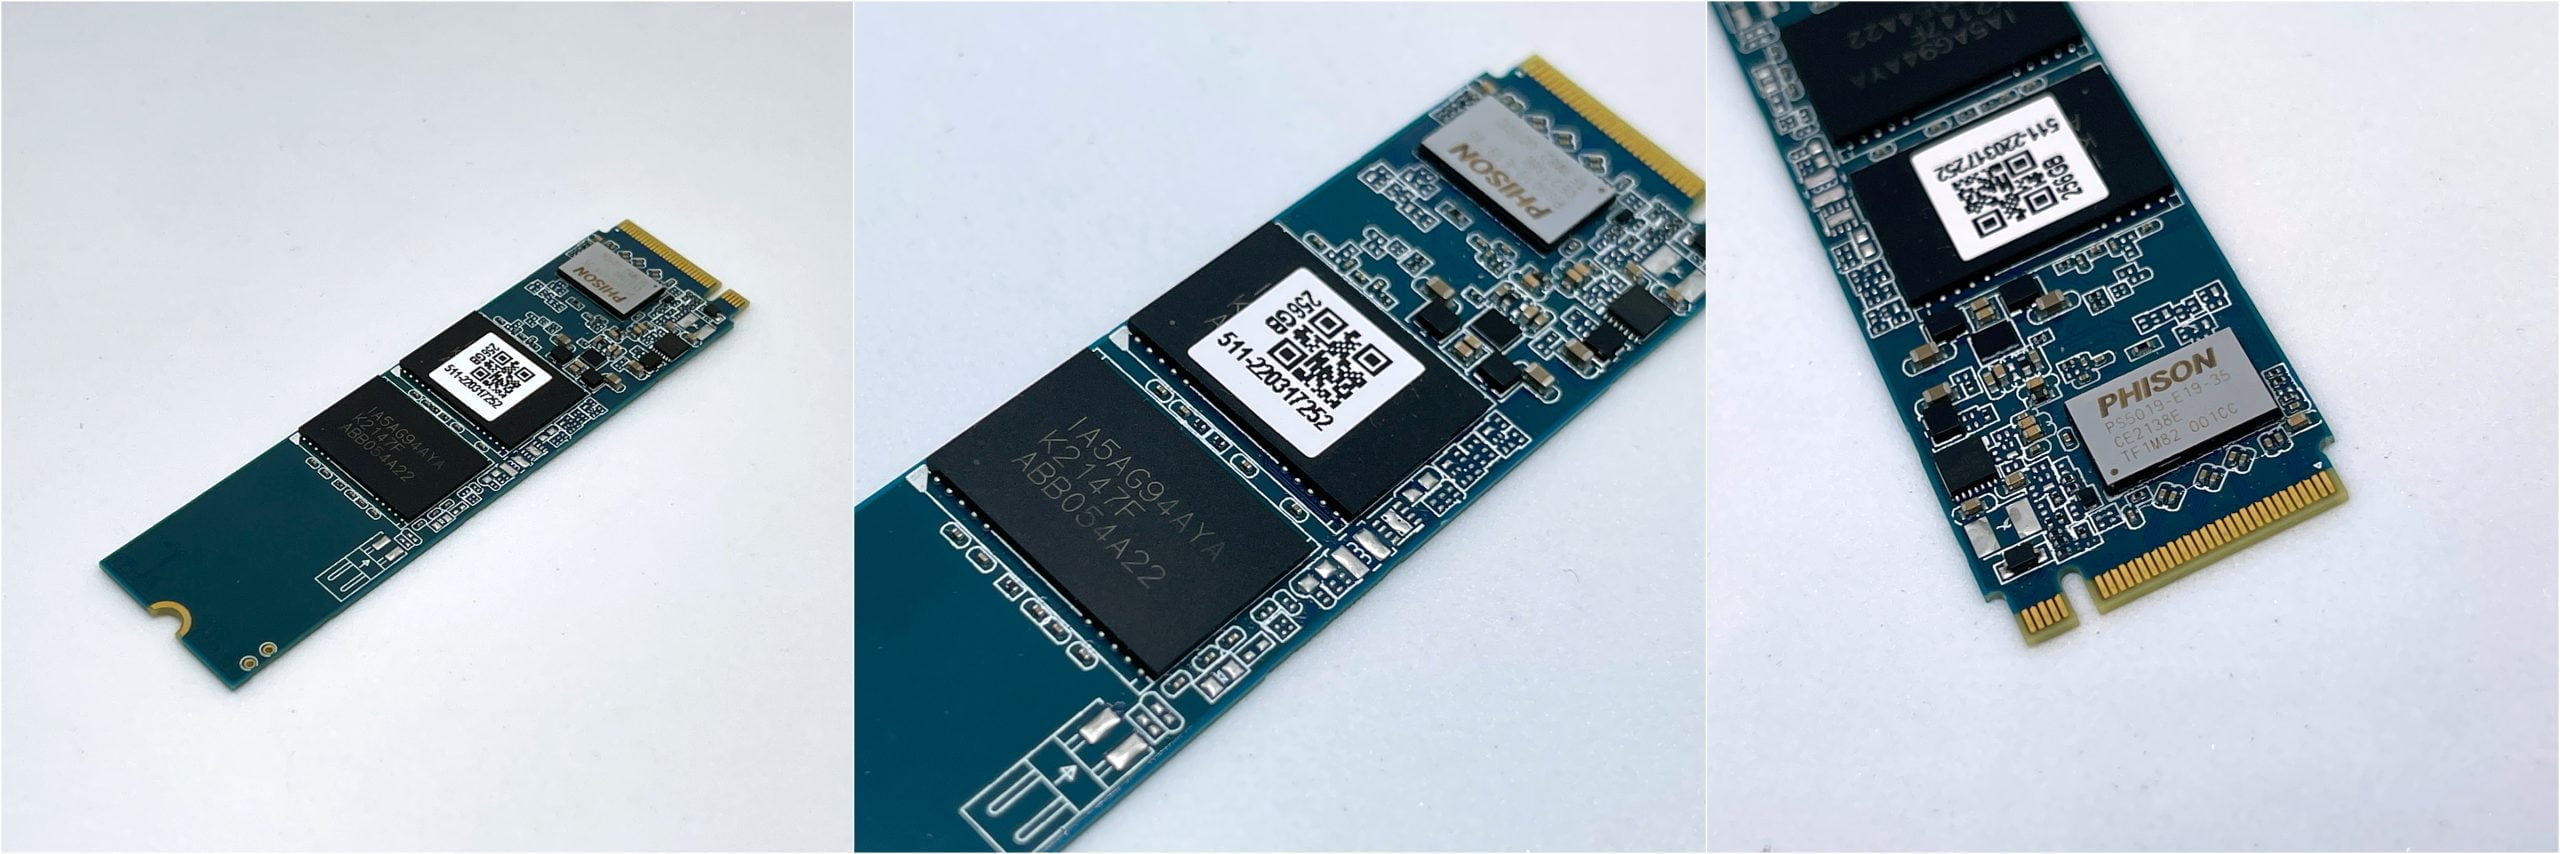 [Quick Test] SSTC Hammerhead E19 PCIe 4.0 x4 NVMe M.2 SSD 256GB/512GB – Thương hiệu Việt, tốc độ nhanh, nhiệt độ mát, khá ngon trong tầm giá dưới 2 triệu đồng - Image 6